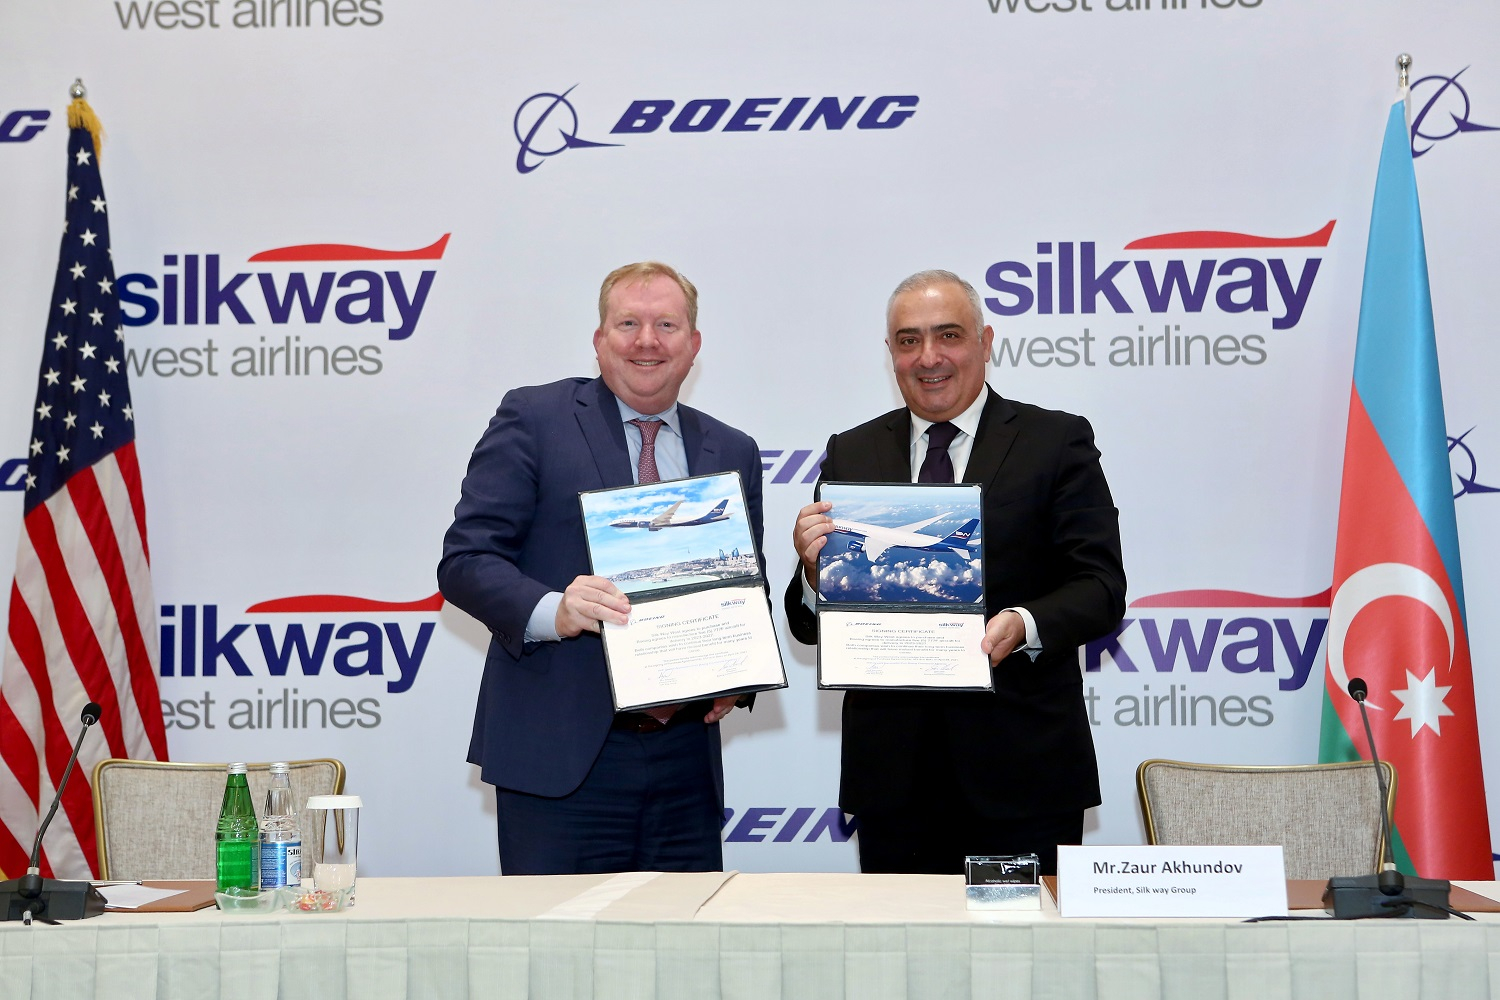 Donanmasını genişləndirən Silk Way West Airlines və Boeing arasında strateji razılaşma imzalanıb